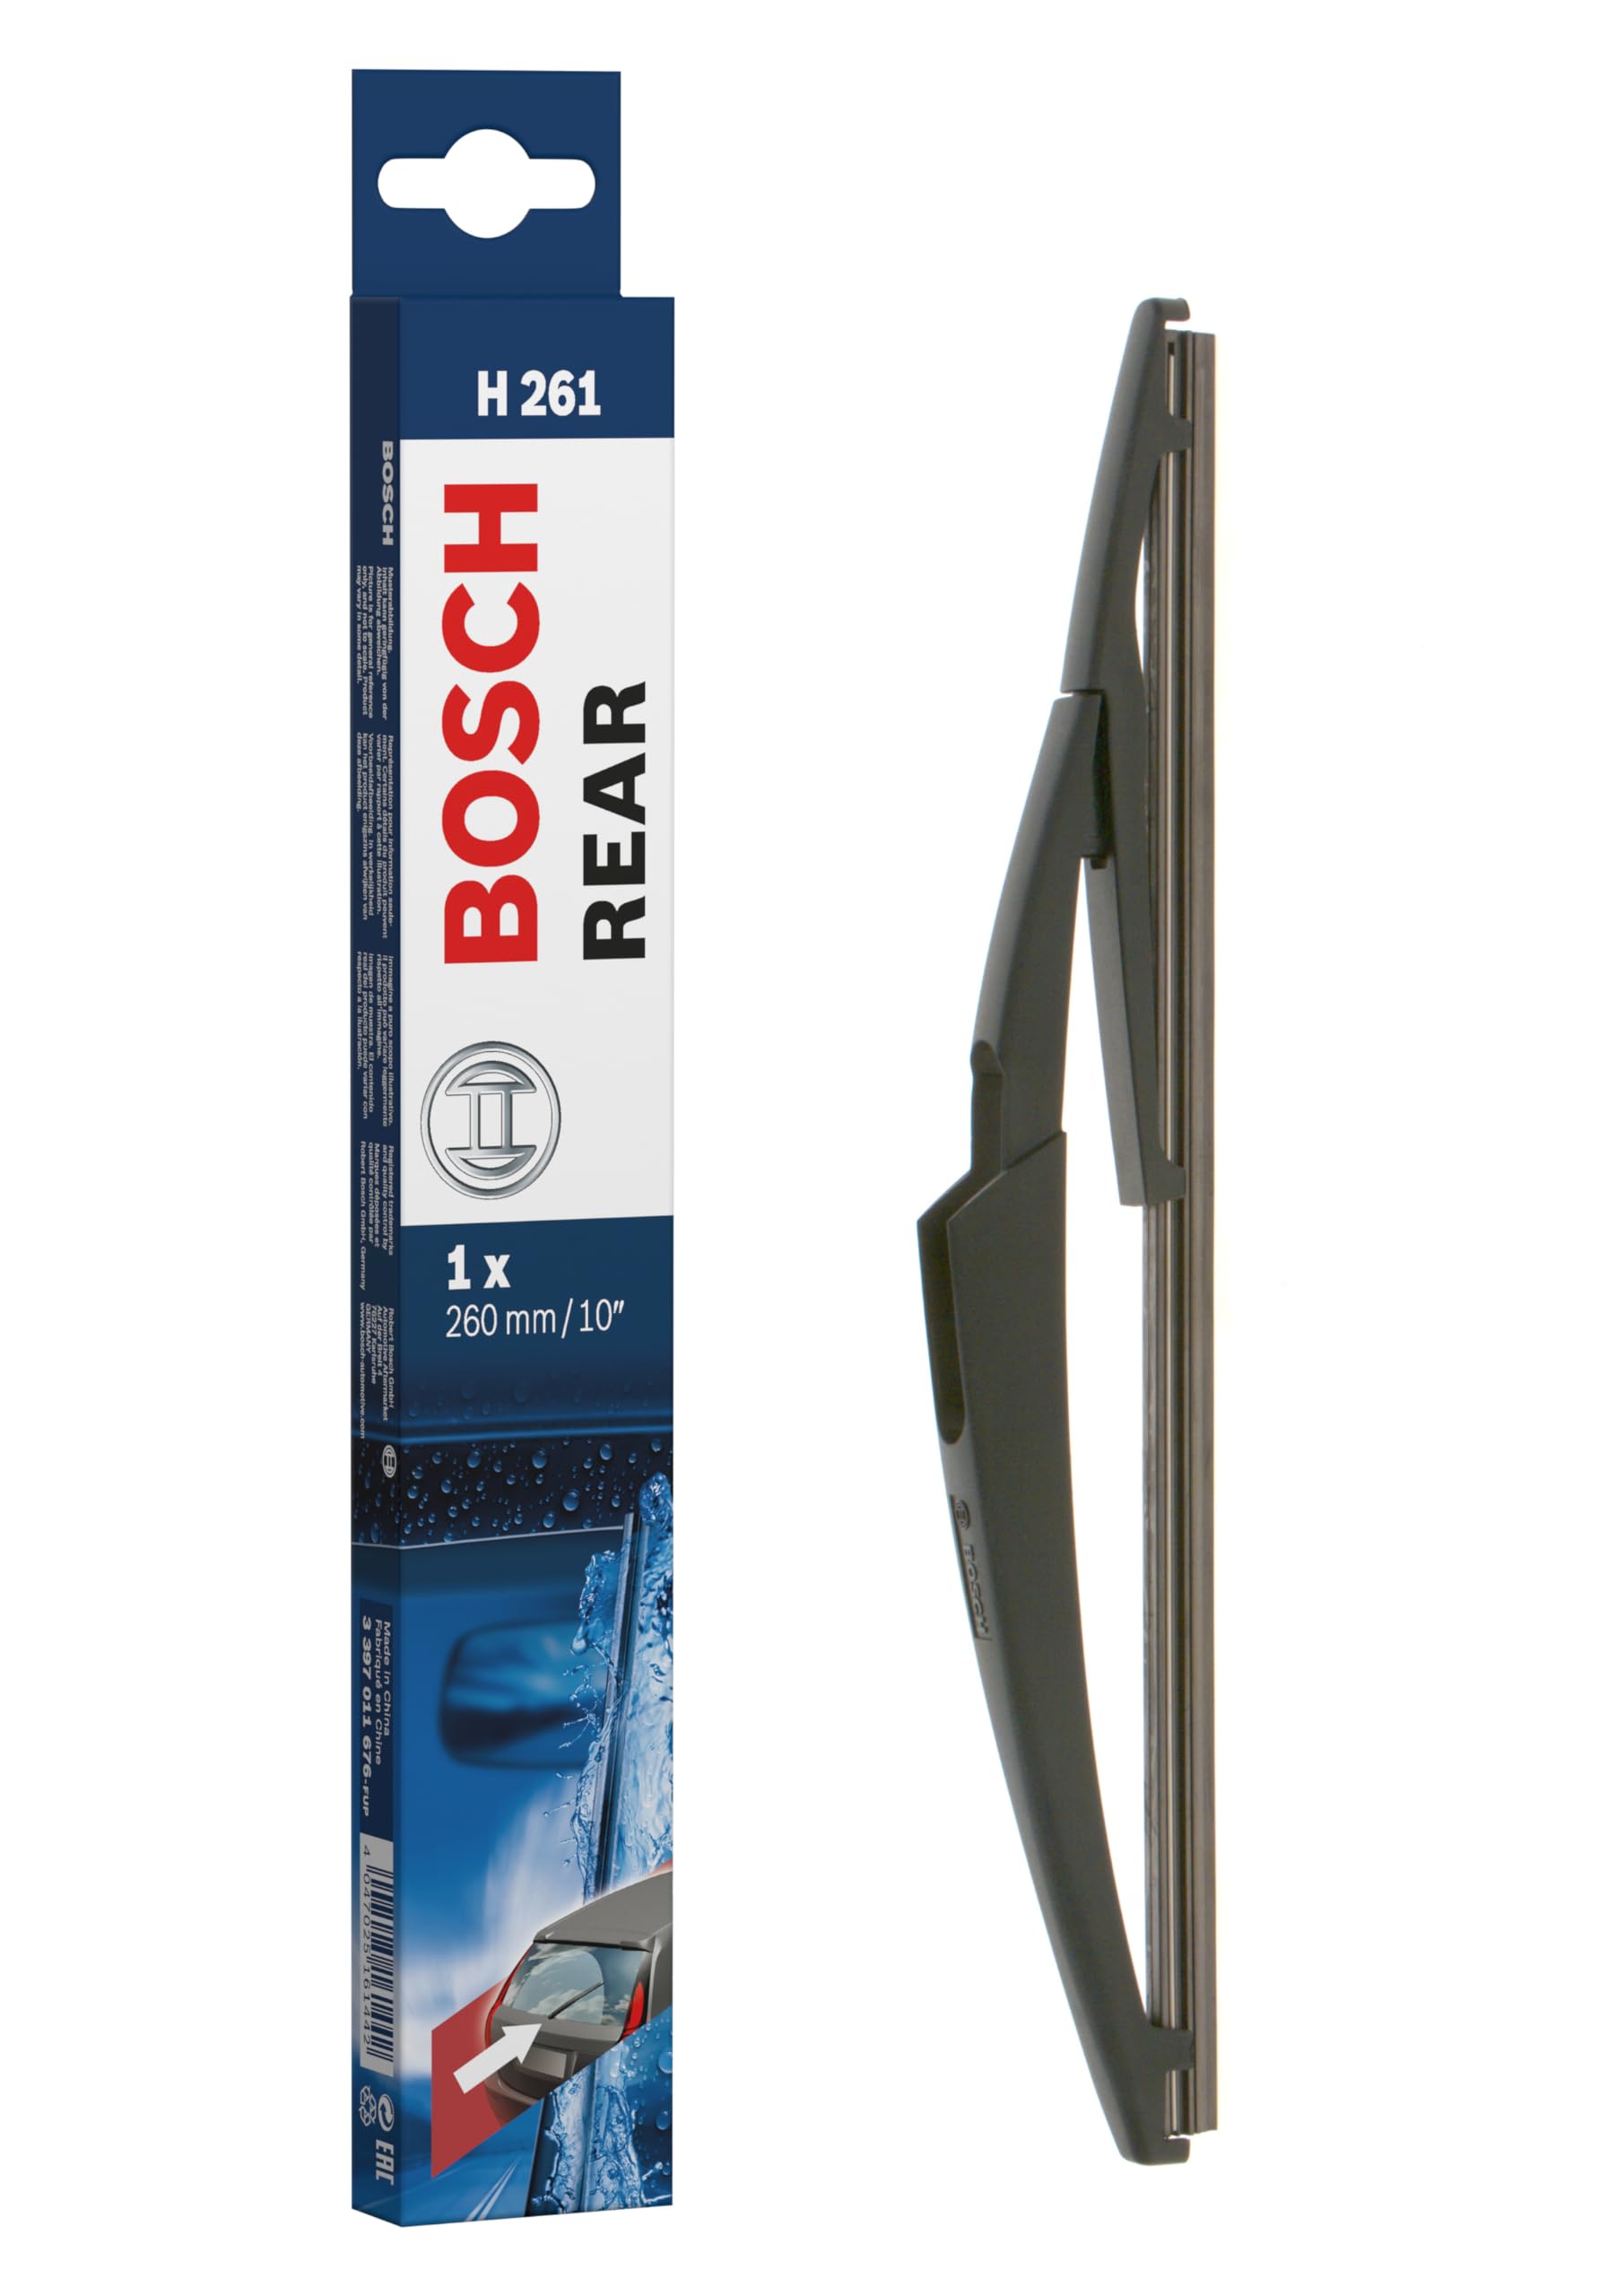 Bosch Scheibenwischer Rear H261, Länge: 260mm – Scheibenwischer für Heckscheibe von Bosch Automotive